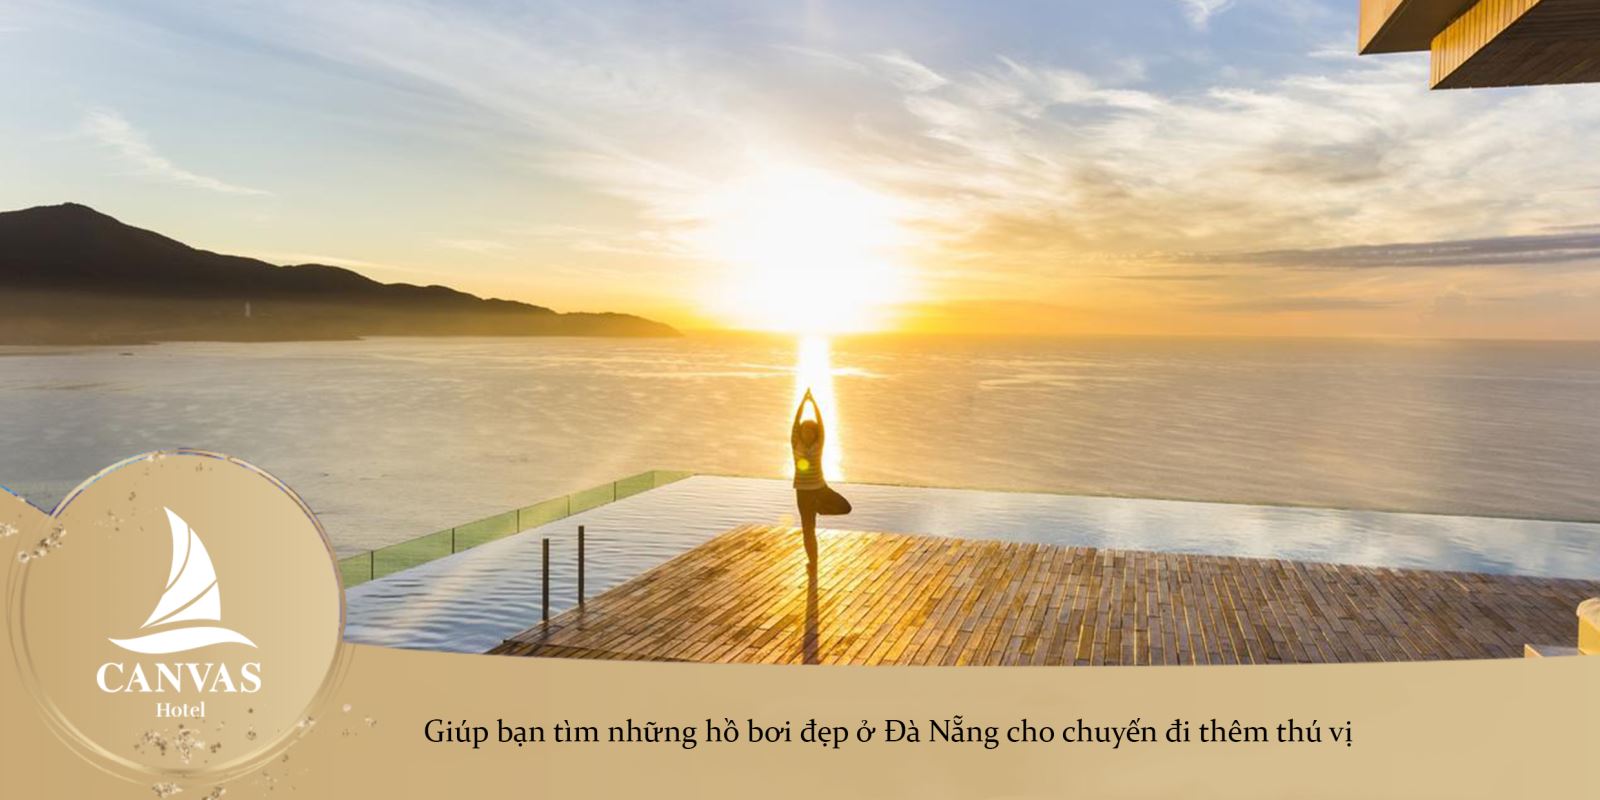 Giúp bạn tìm những hồ bơi đẹp ở Đà Nẵng cho chuyến đi thêm thú vị